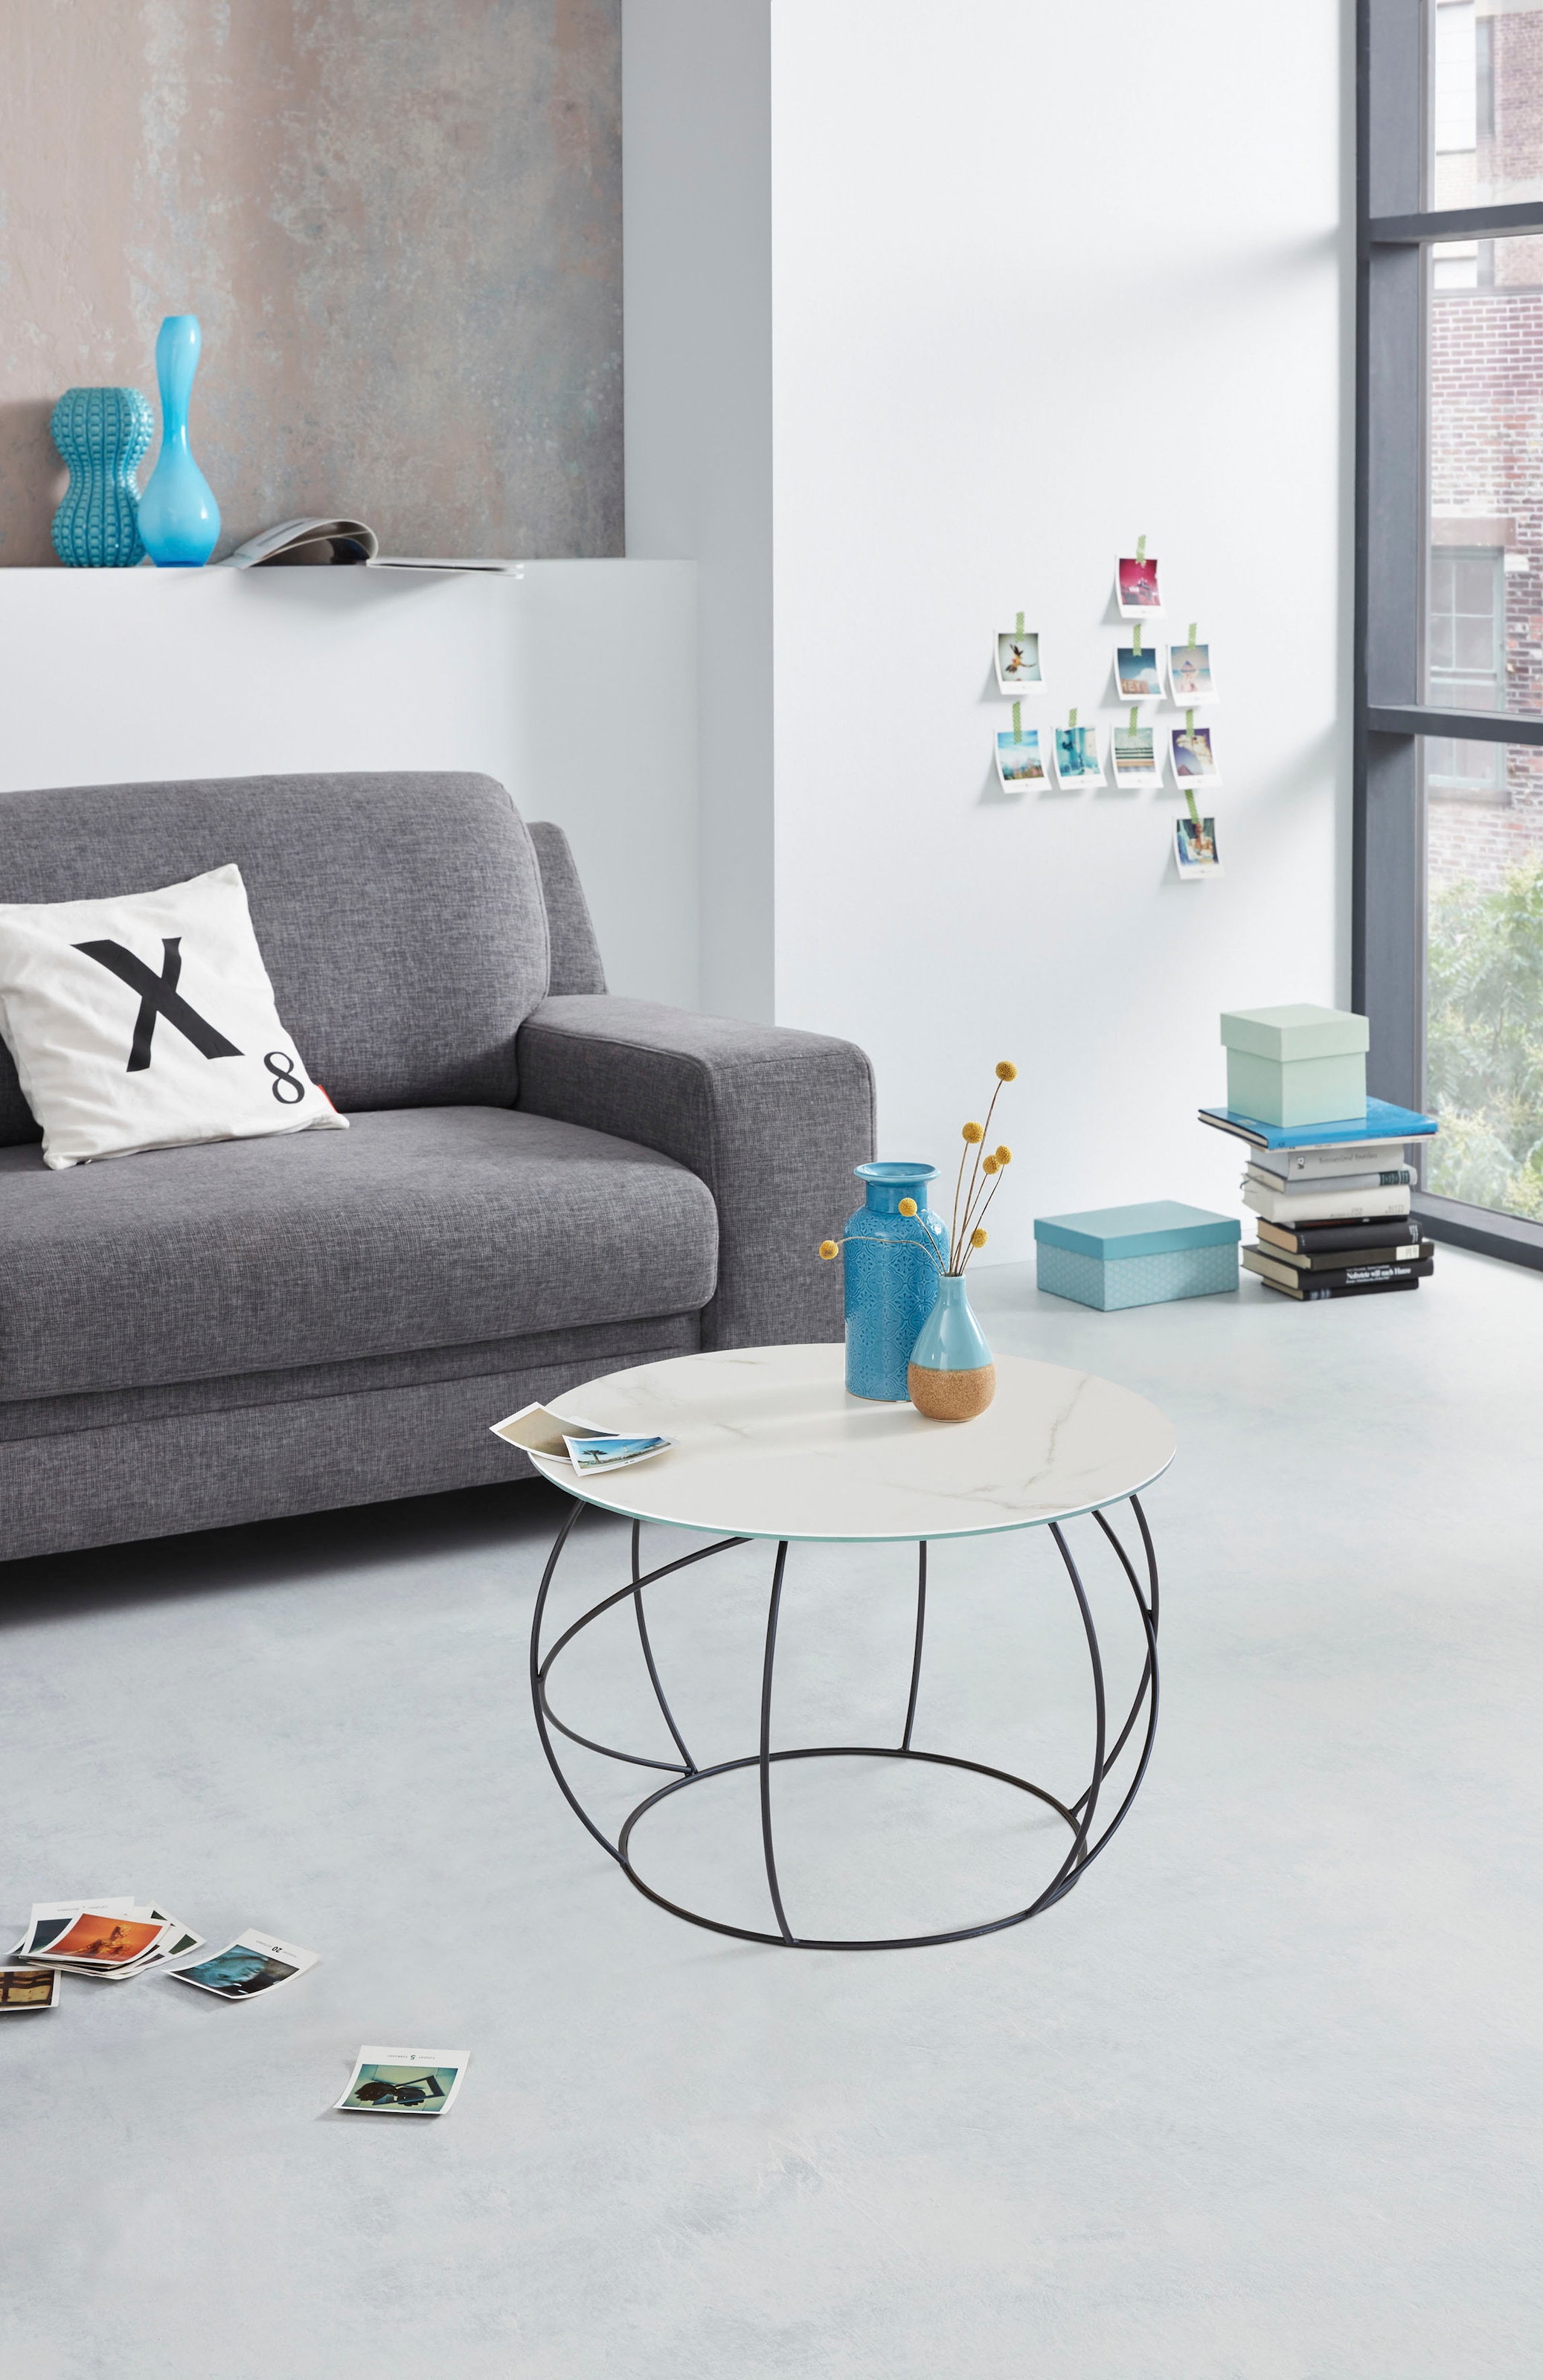 Henke Möbel Beistelltisch, Tischplatte aus hochwertiger Keramik OTTO Online  Shop